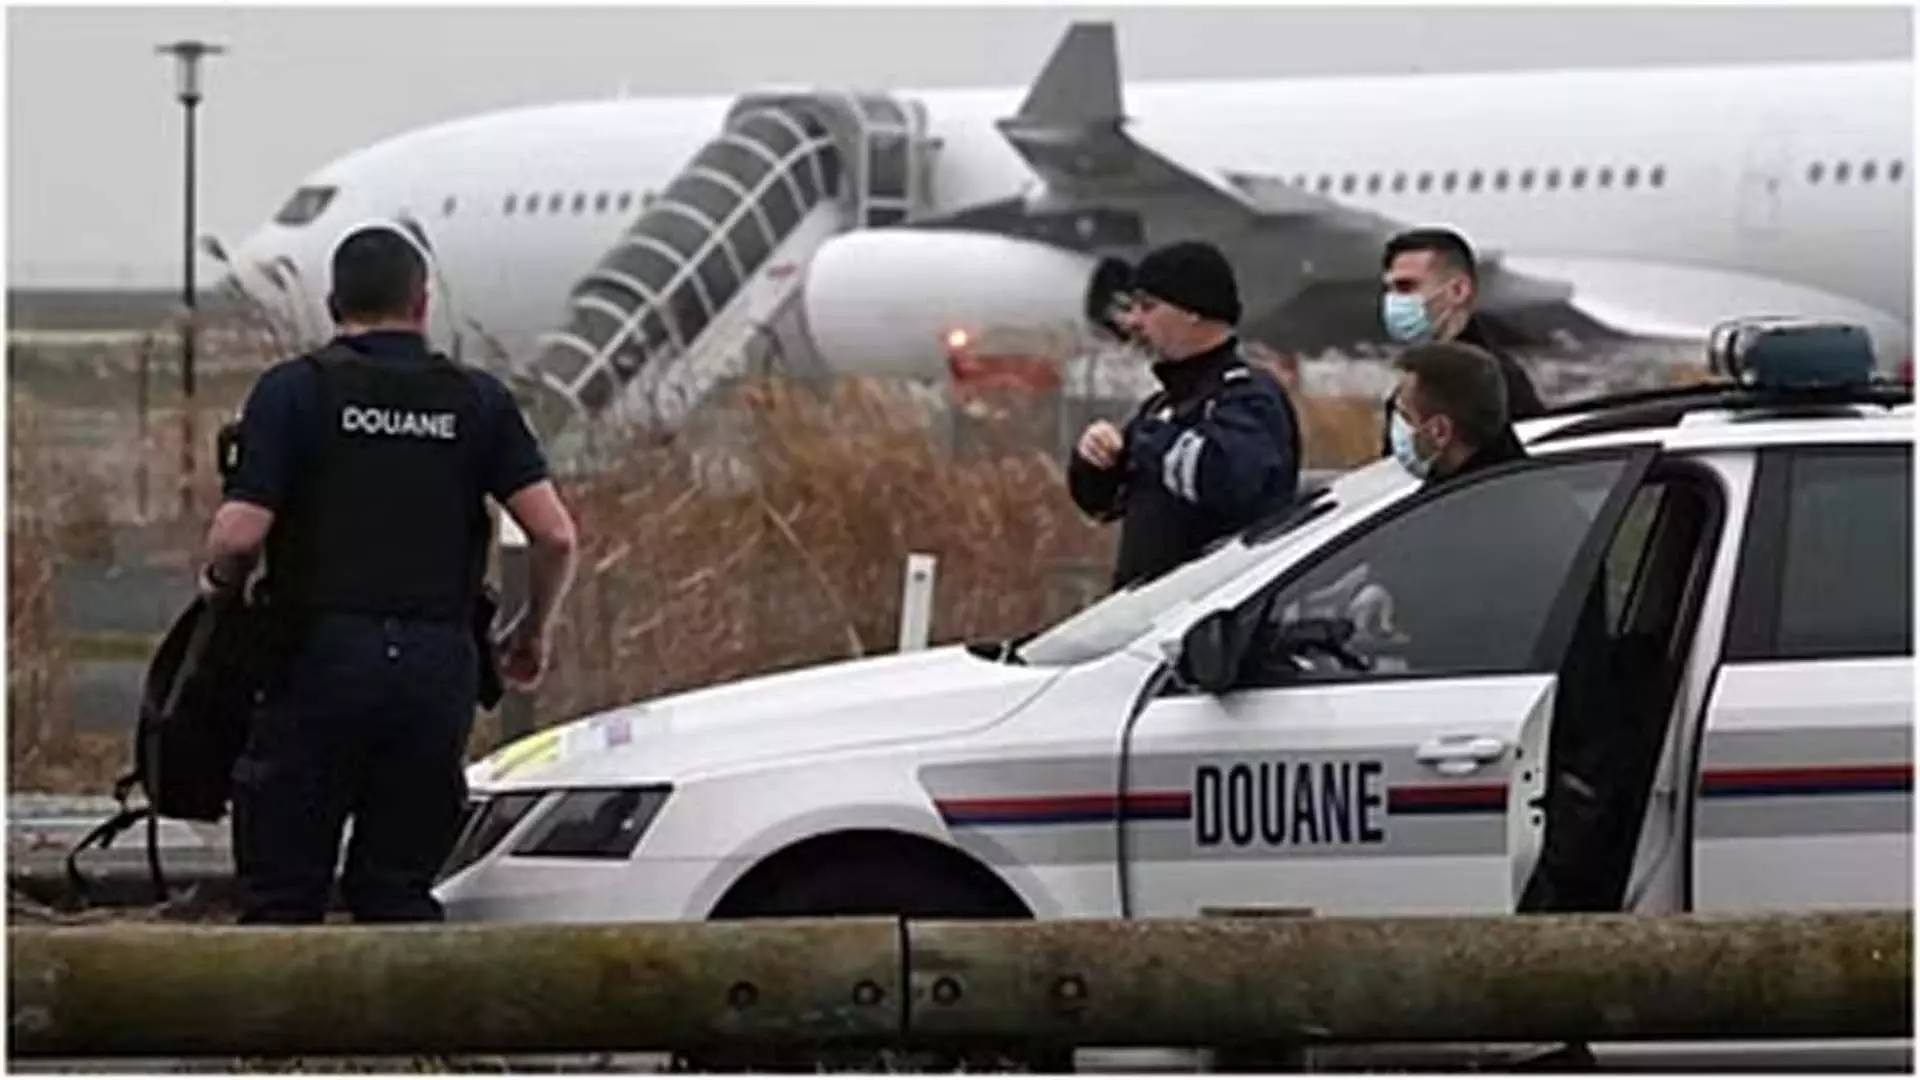 पेरिस-मुंबई उड़ान में धूम्रपान, करने के आरोप में फ्रांसीसी को गिरफ्तार किया गया